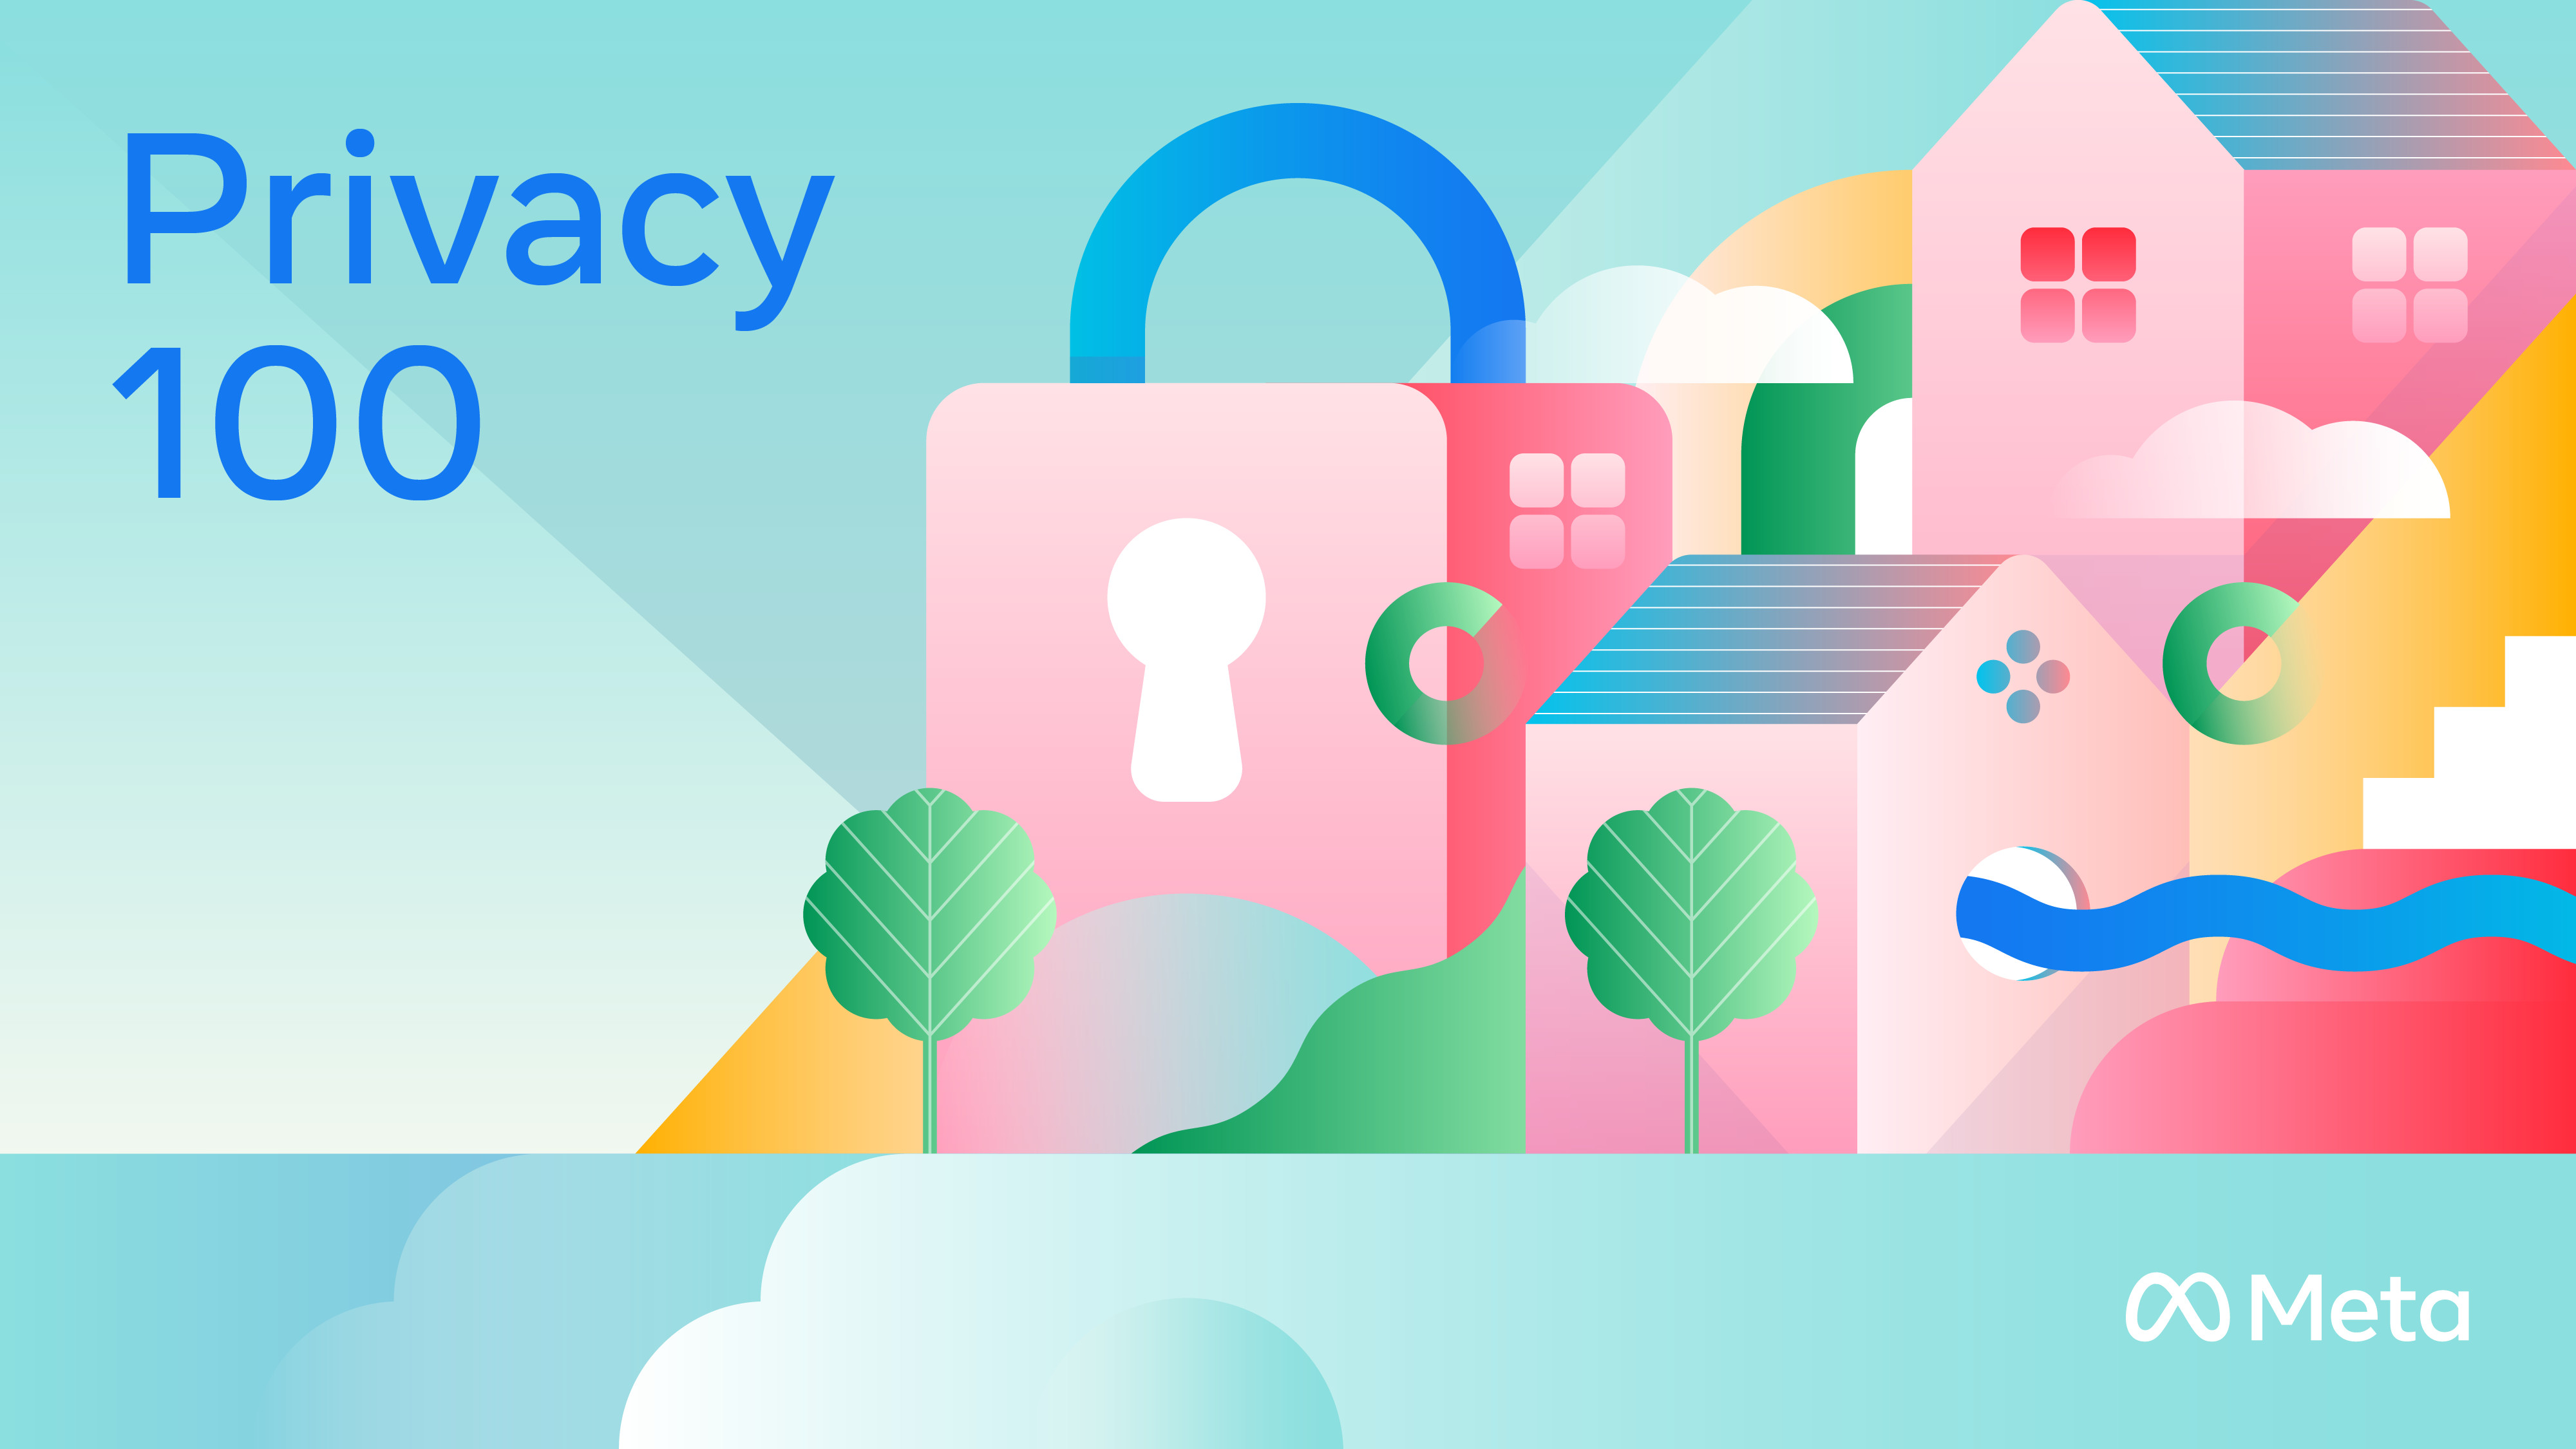 Jaga Keamanan Dan Data Pribadi, Meta Luncurkan Kuis Privacy100